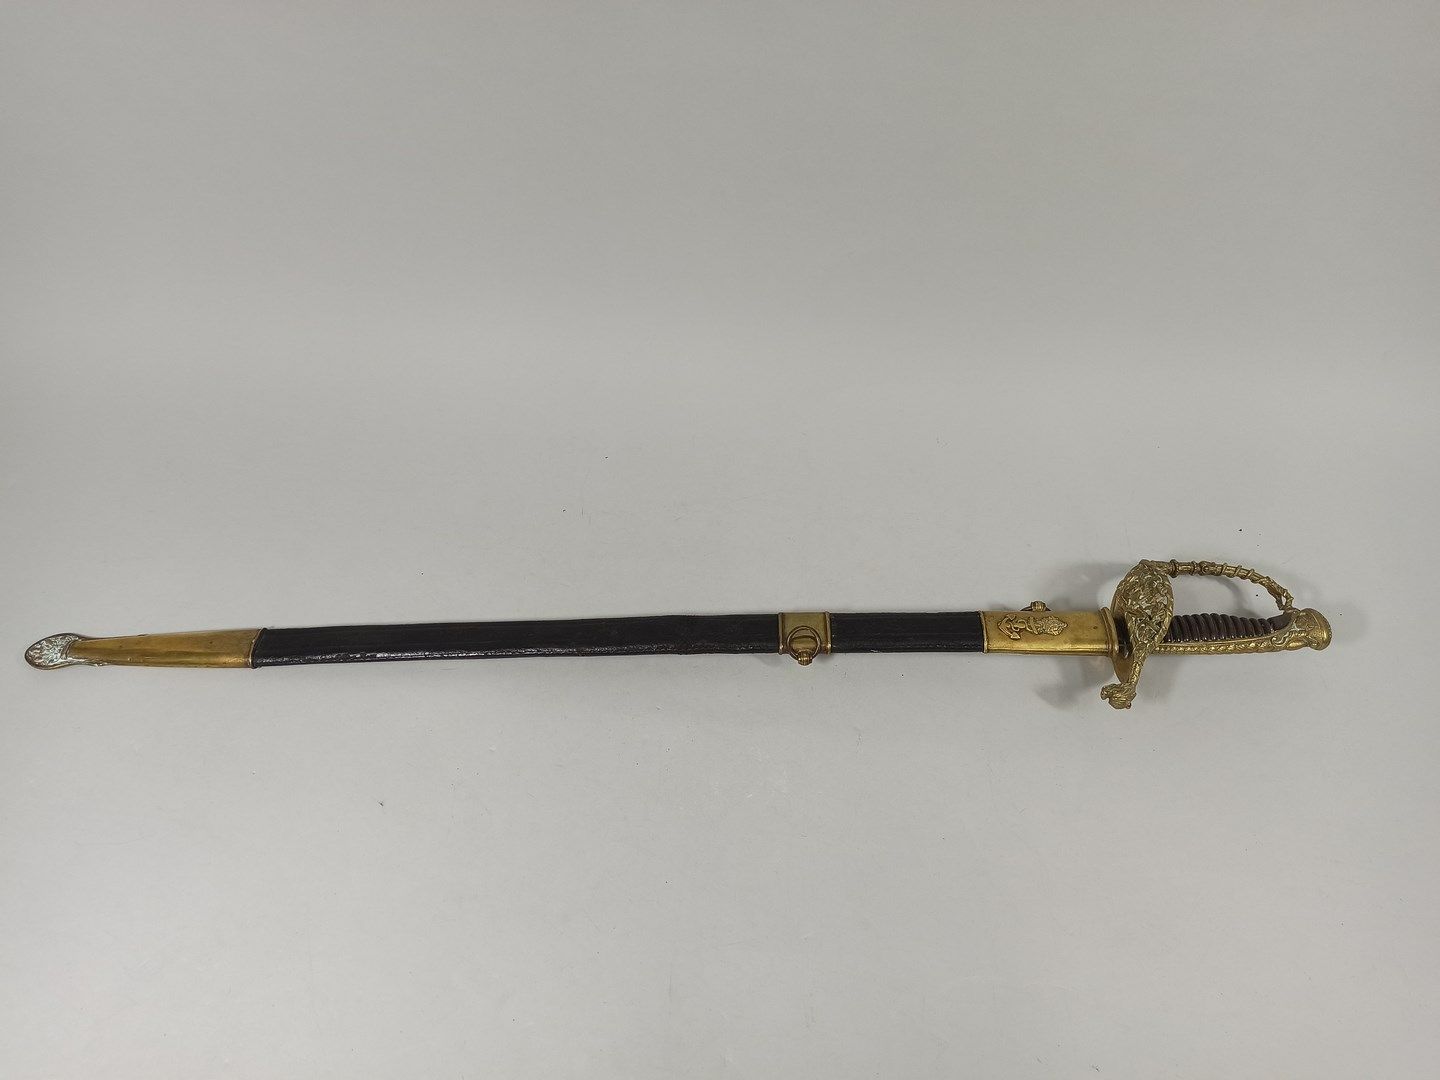 Null 海军军官的剑，型号为1837。

冠状锚的装饰。

第二帝国时期

水印丢失。